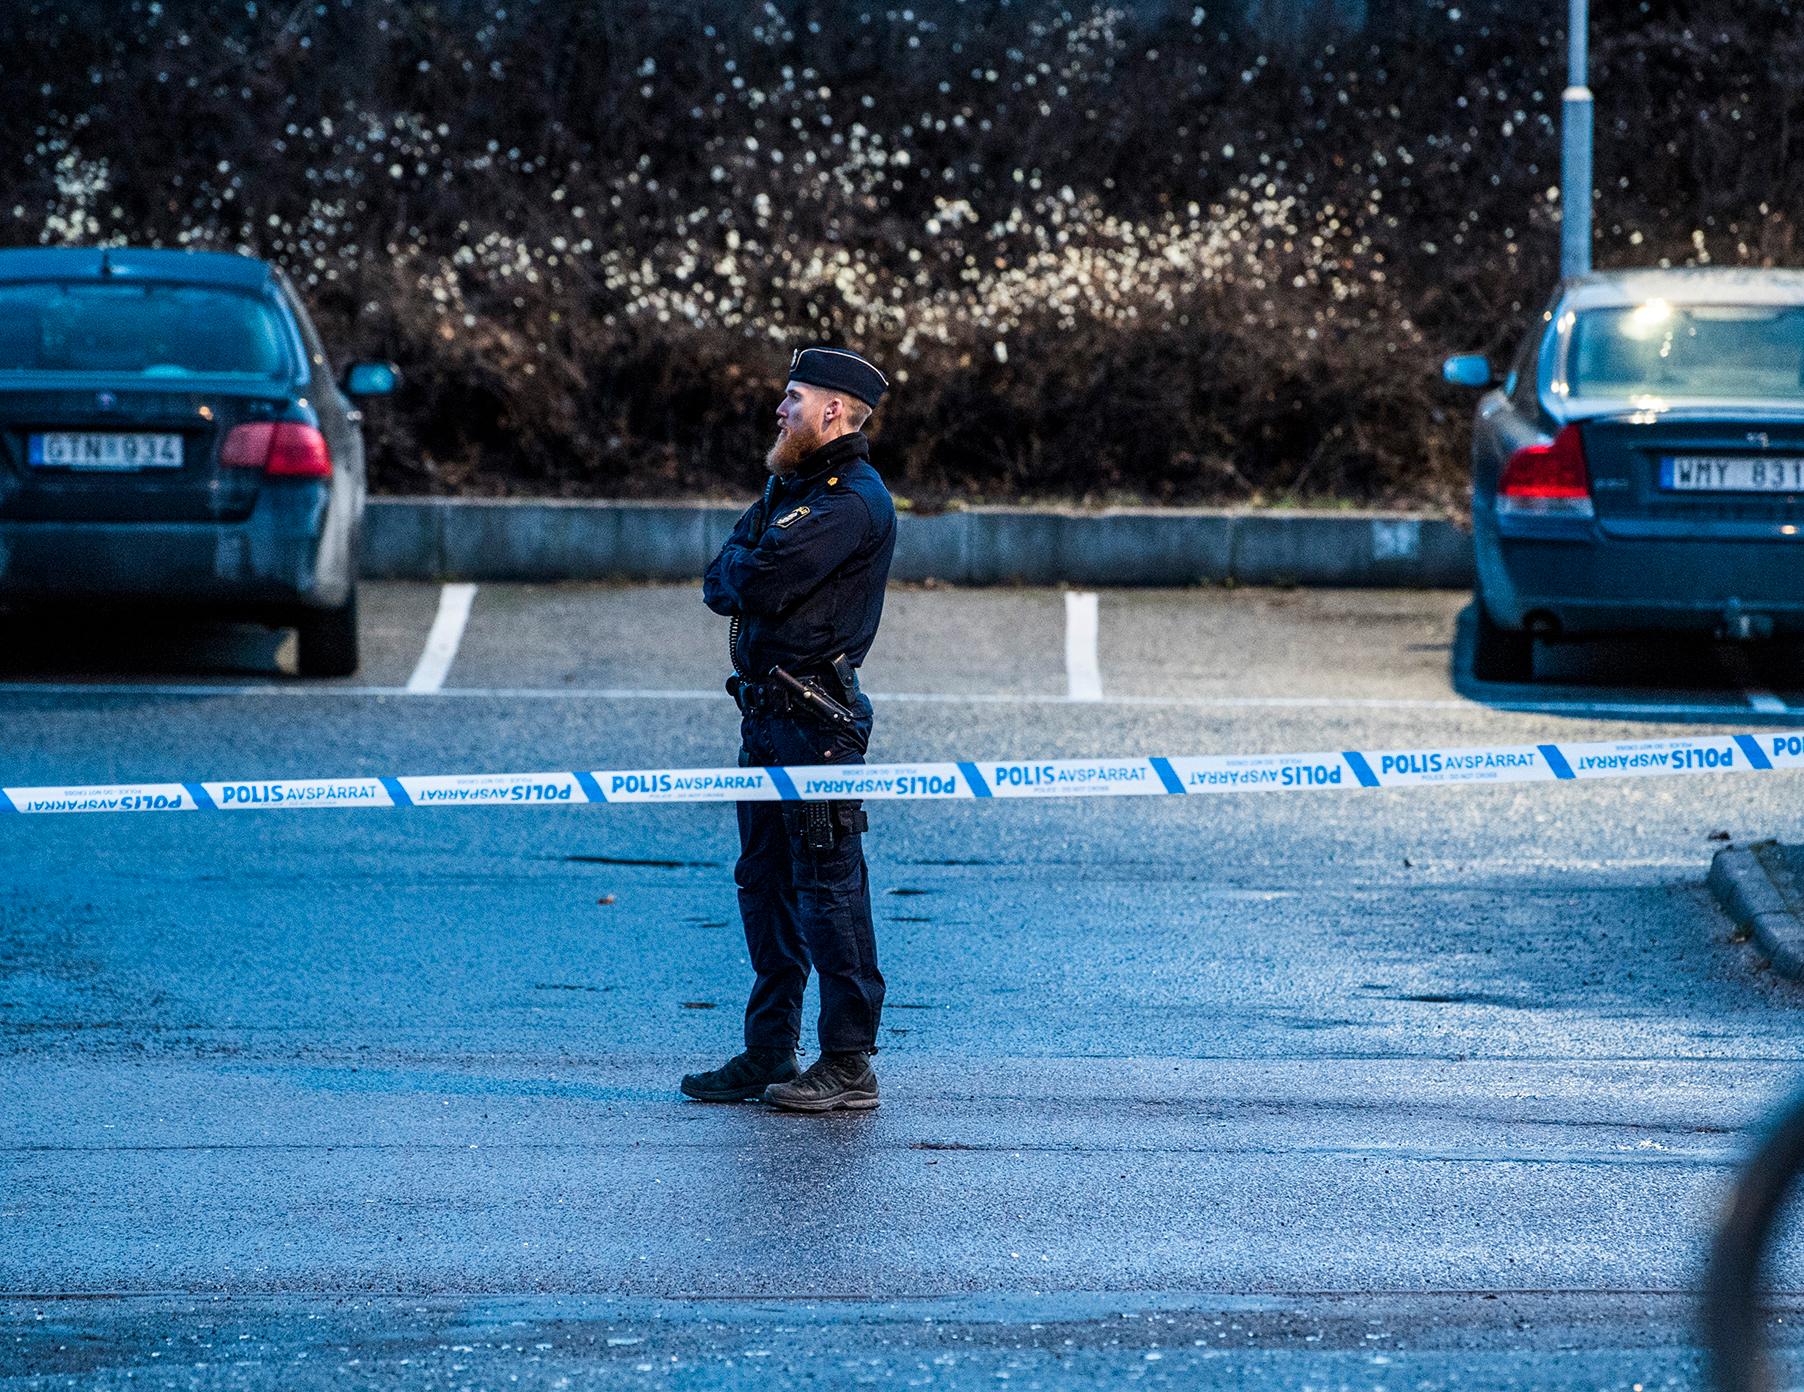 Polis bakom avspärrningarna efter nattens sprängningar i Kista, Stockholm. 